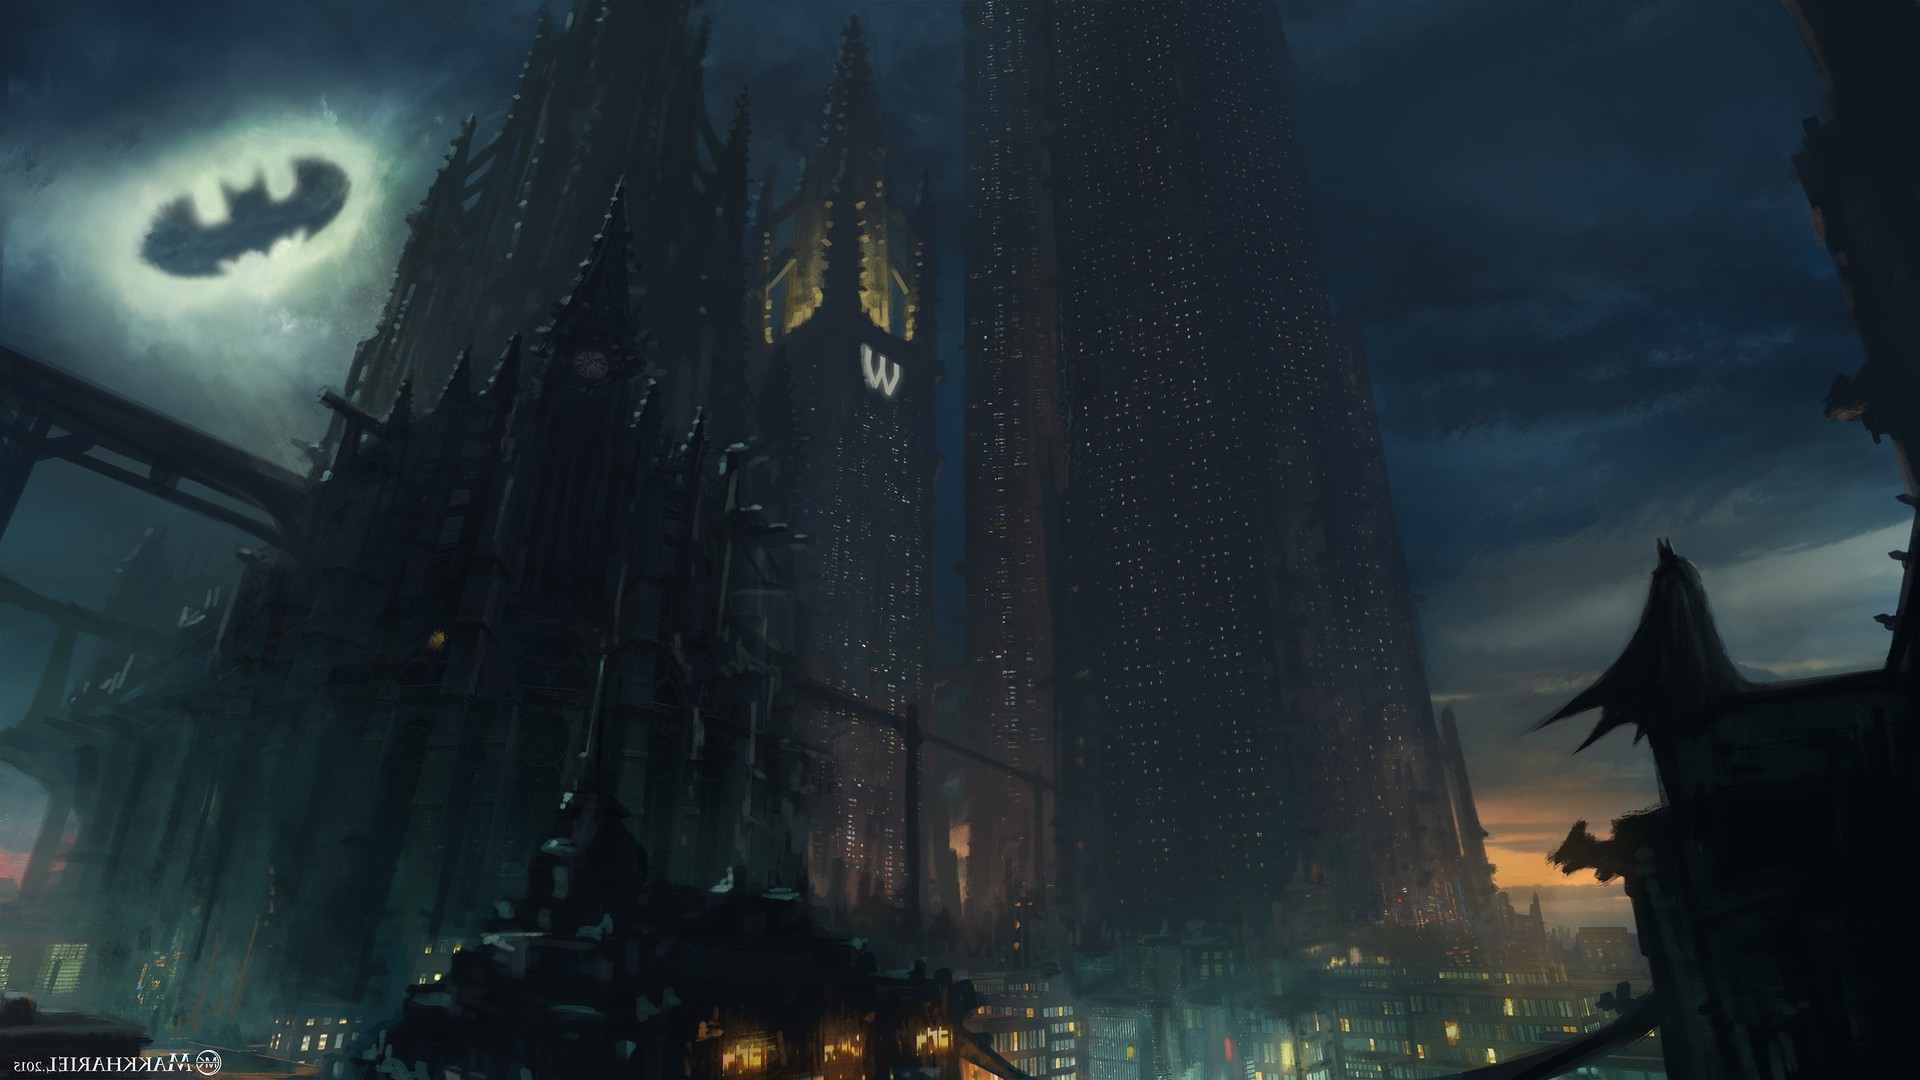 Gotham City Background 62 images